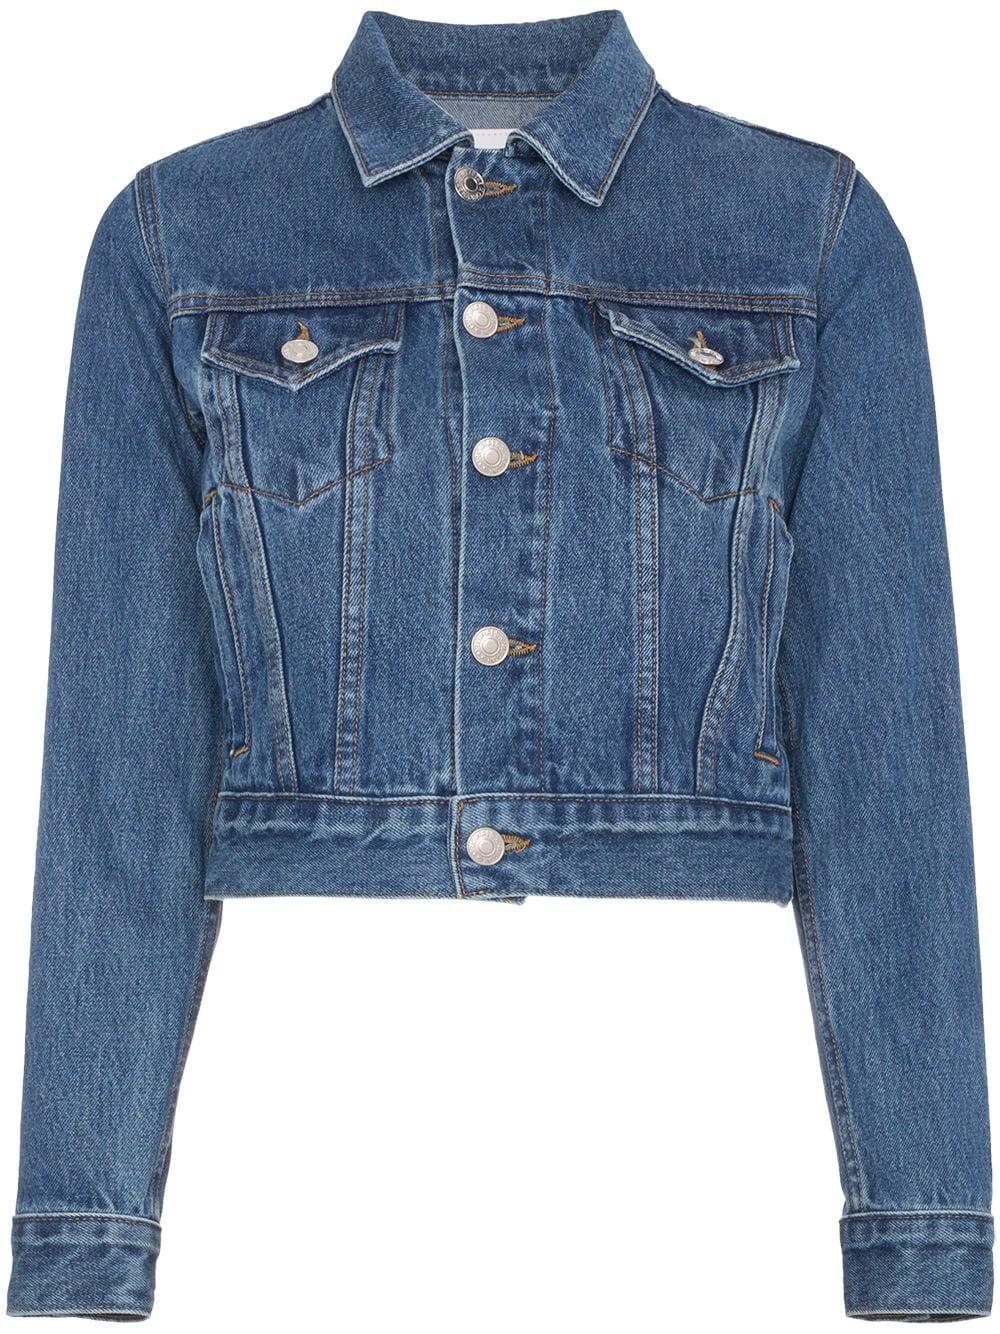 RE/DONE Cotton Originals Trucker Denim Jacket in Blue - Lyst